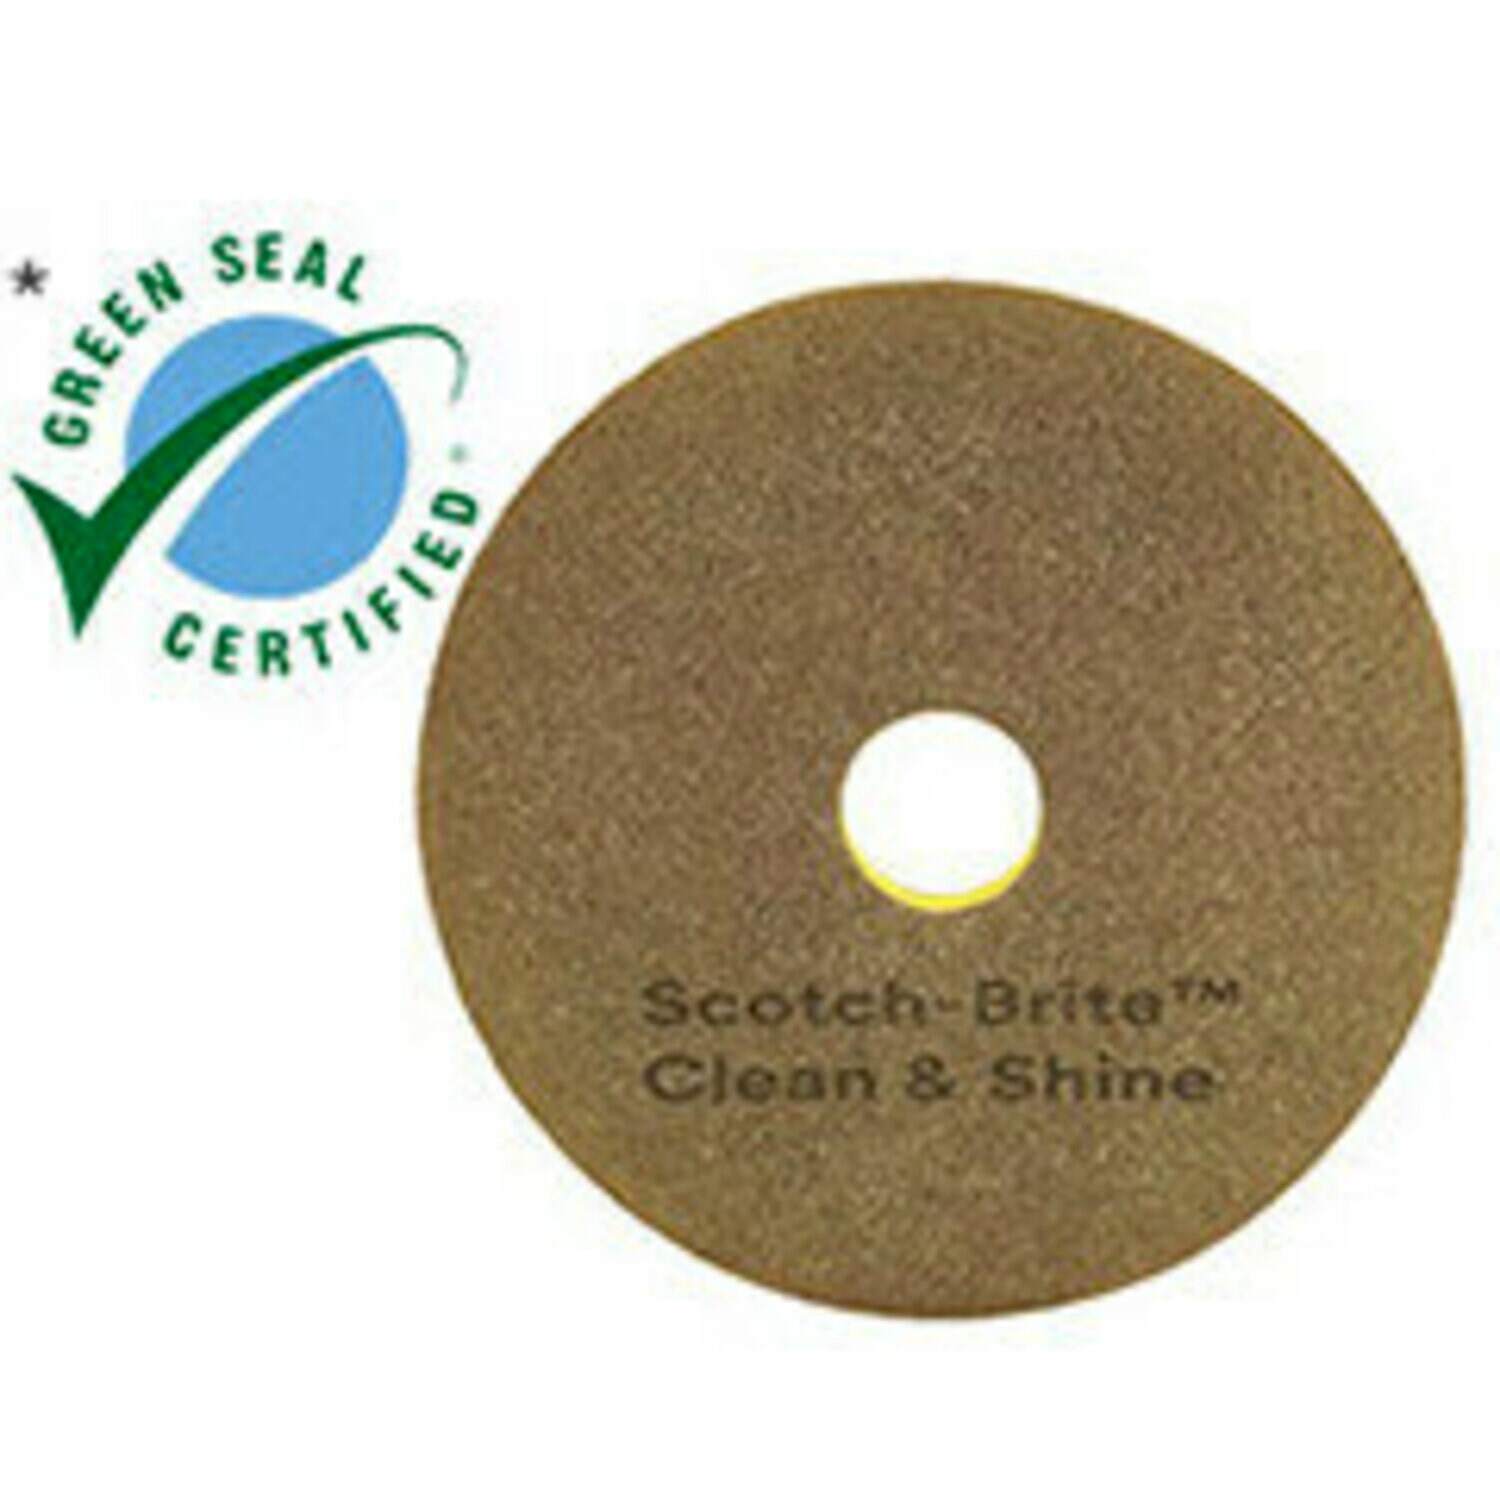 7100148018 - Scotch-Brite Clean & Shine Pad, 17 in, 5/Case